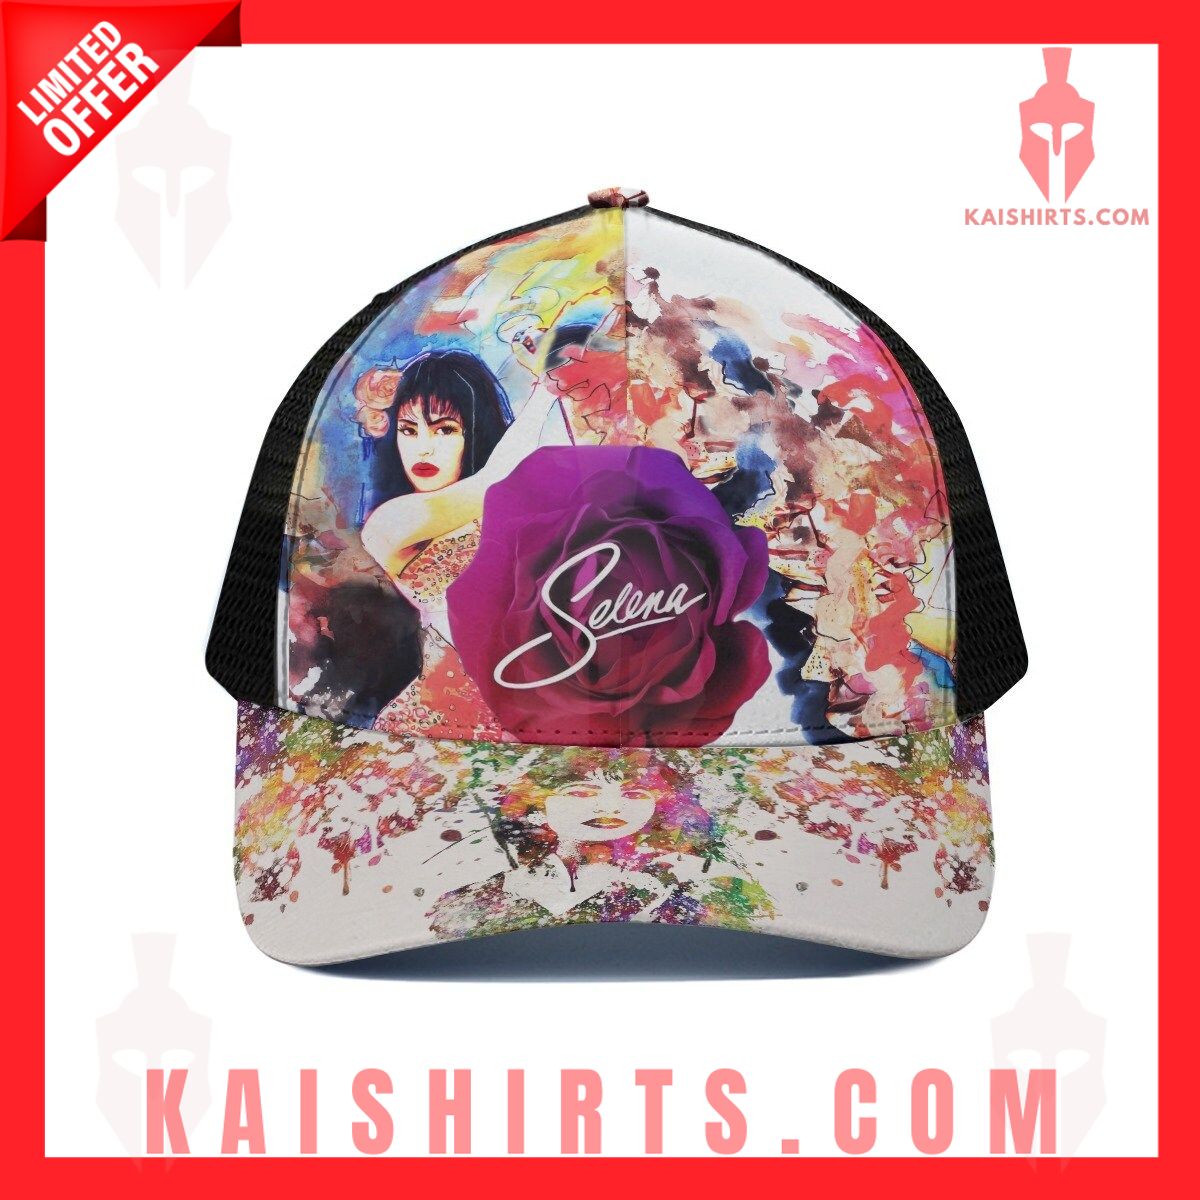 Selena Black Mesh Baseball Cap's Product Pictures - Kaishirts.com